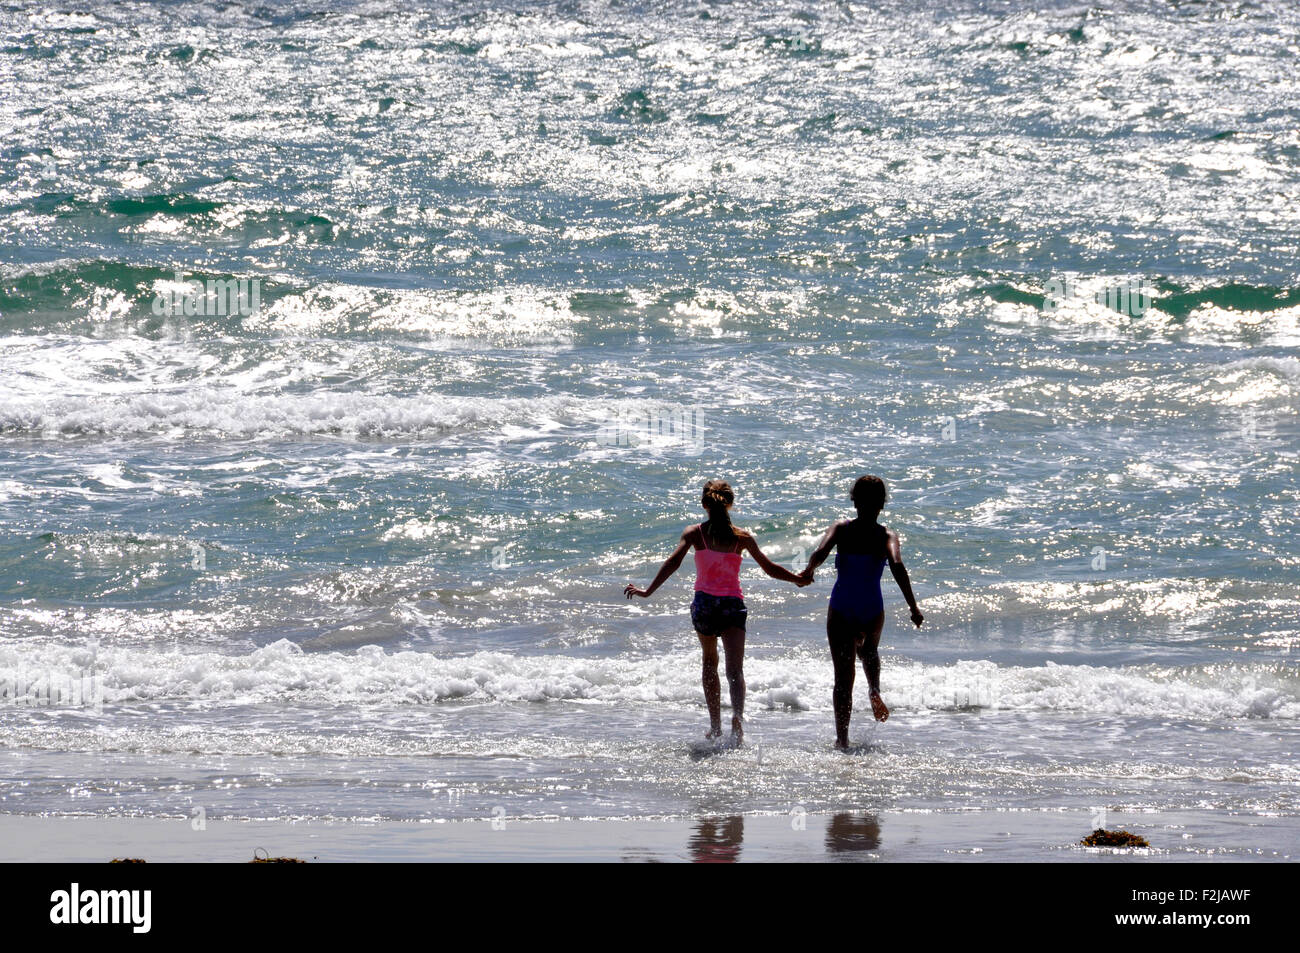 Contro la luce del sole seascape - spumanti onde che si infrangono sulla spiaggia di sabbia - coppia giovane esecuzione di mano in mano nel surf Foto Stock